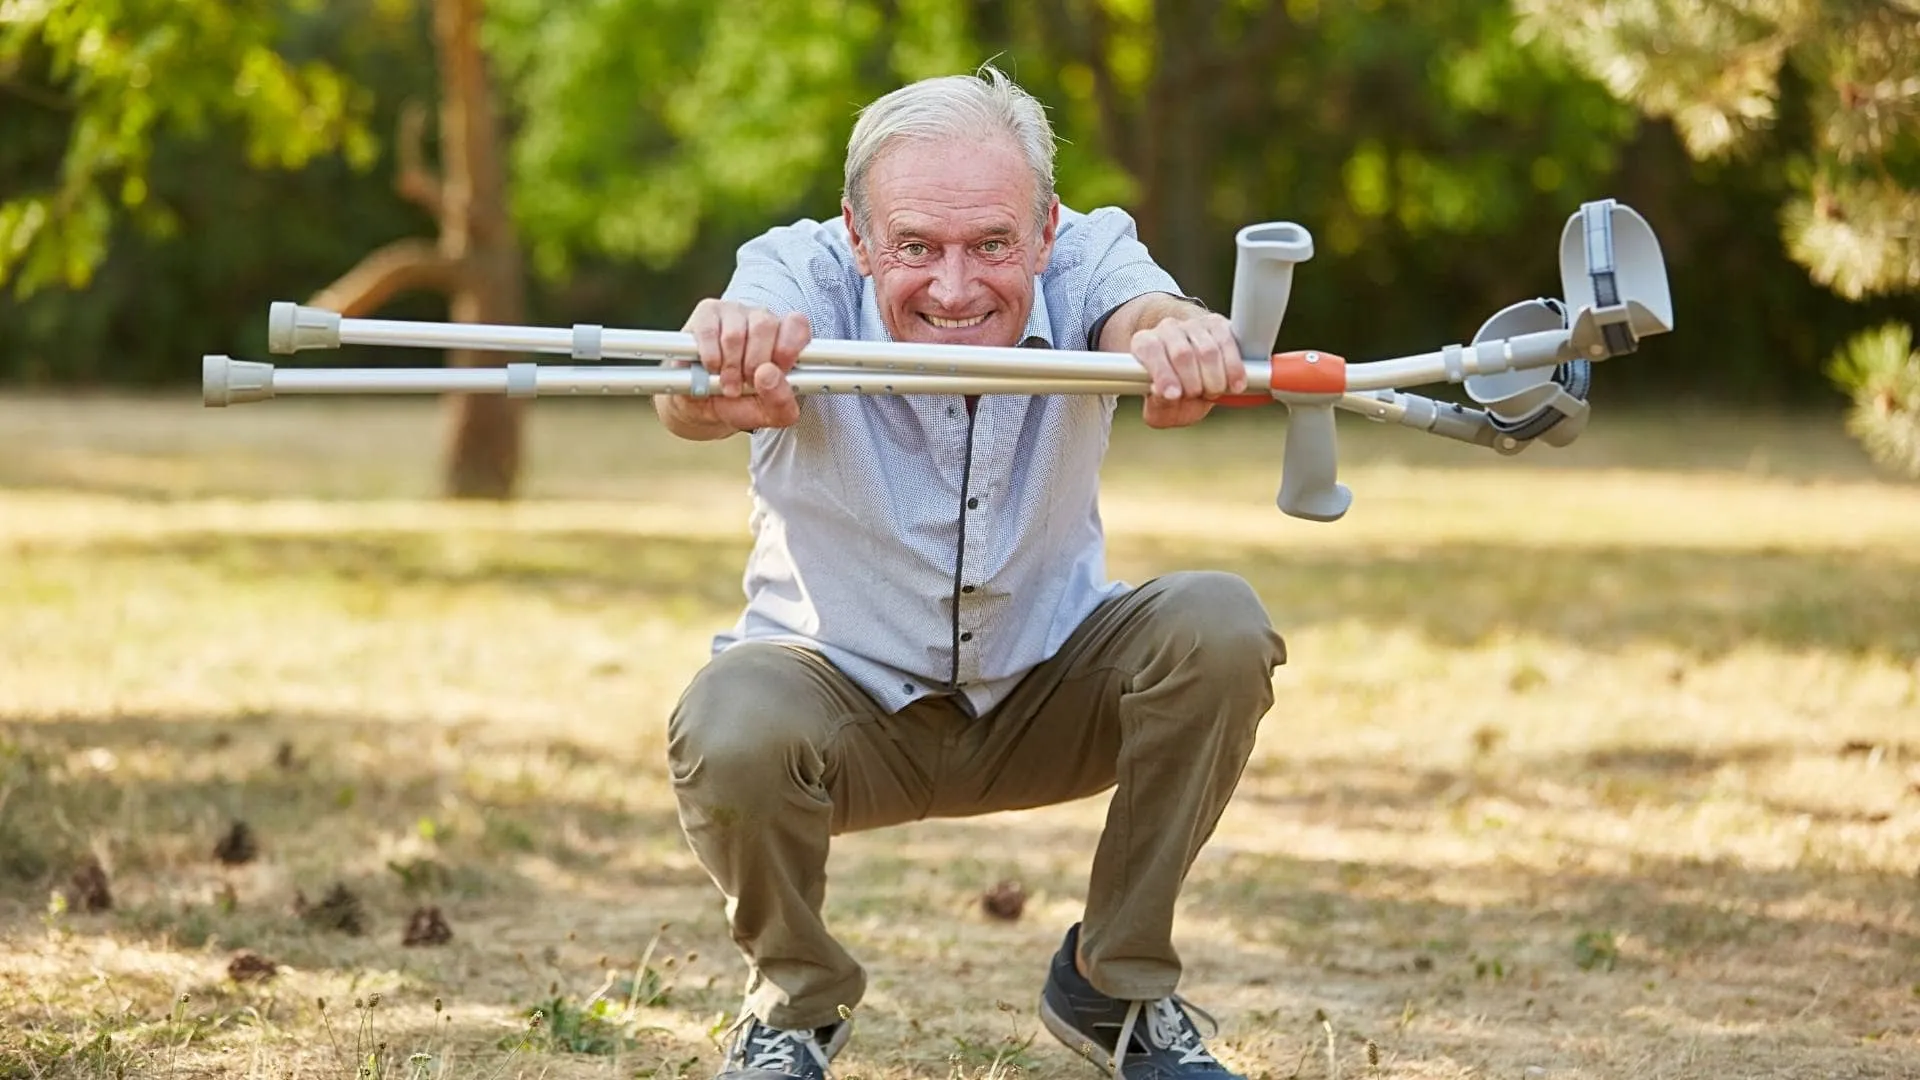 bioresonance therapy benefits: elderly patient crutches